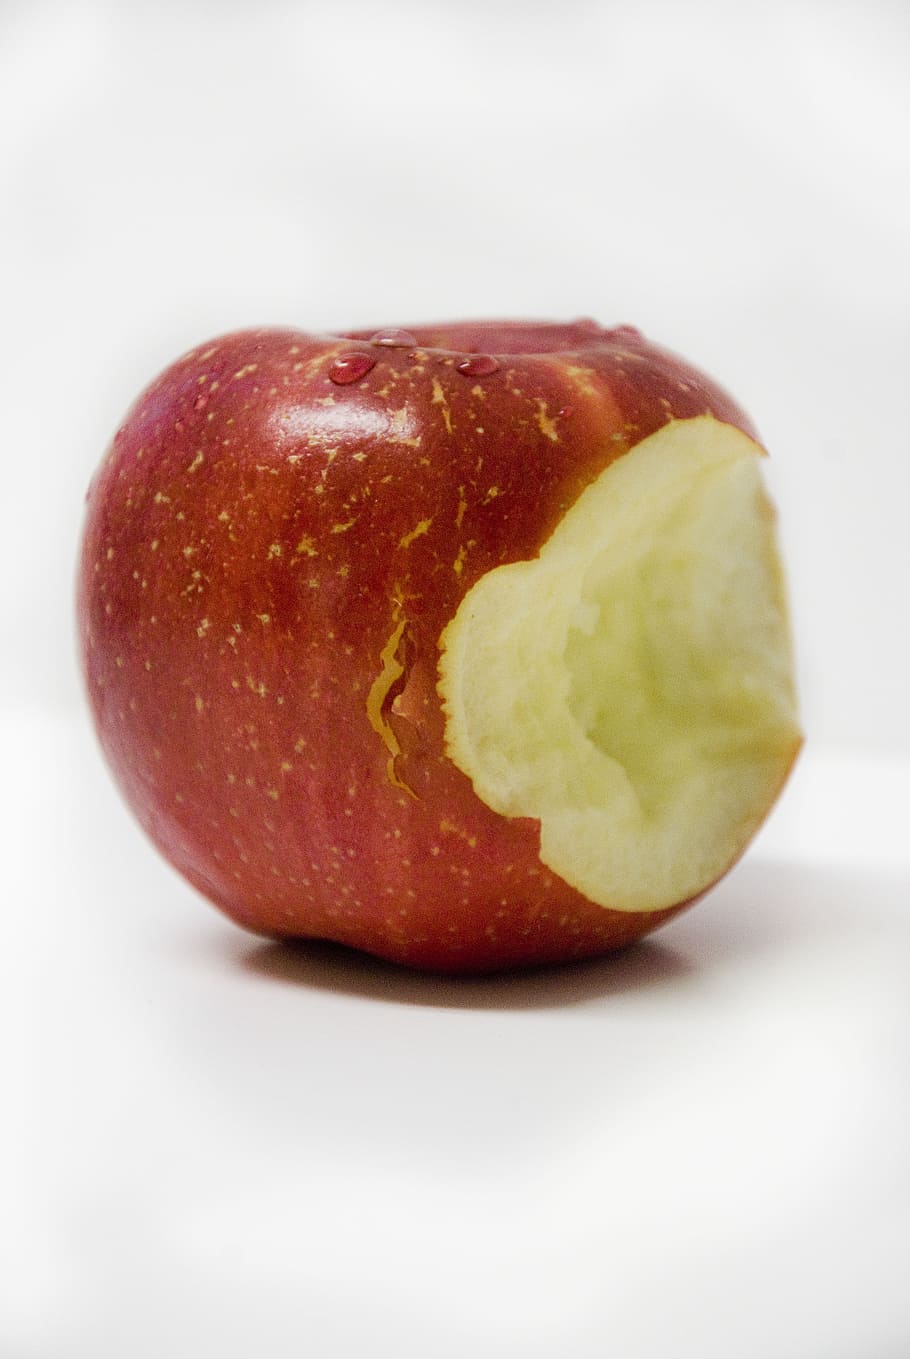 かまれた, 赤, リンゴ, 白, タブル, 赤いリンゴ, かみ傷, 果物, 食品, 健康